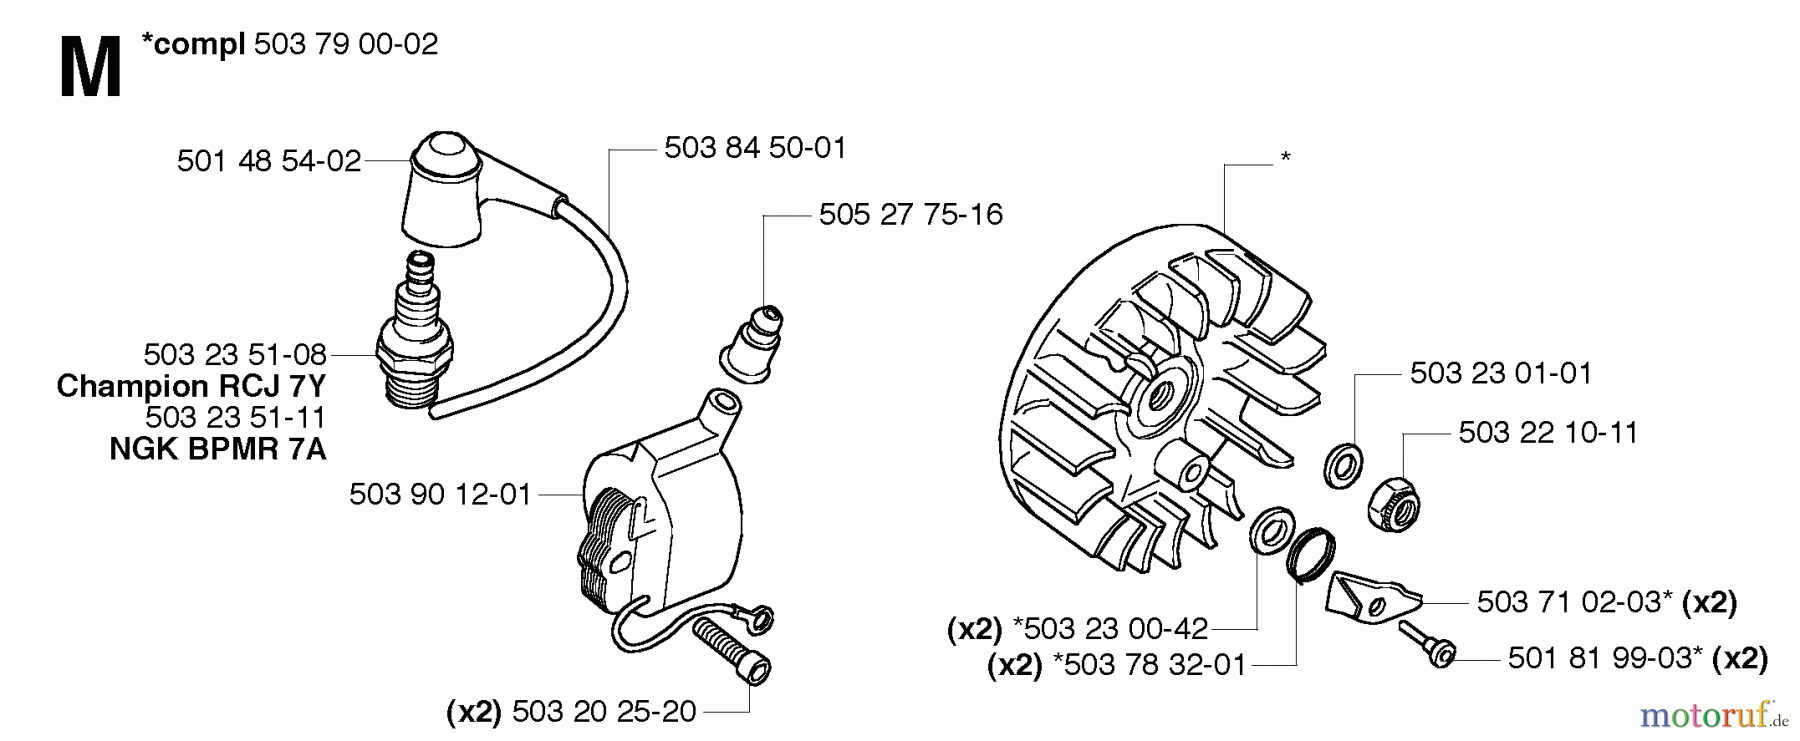  Jonsered Motorsensen, Trimmer GR41 EPA - Jonsered String/Brush Trimmer (2006-01) IGNITION SYSTEM